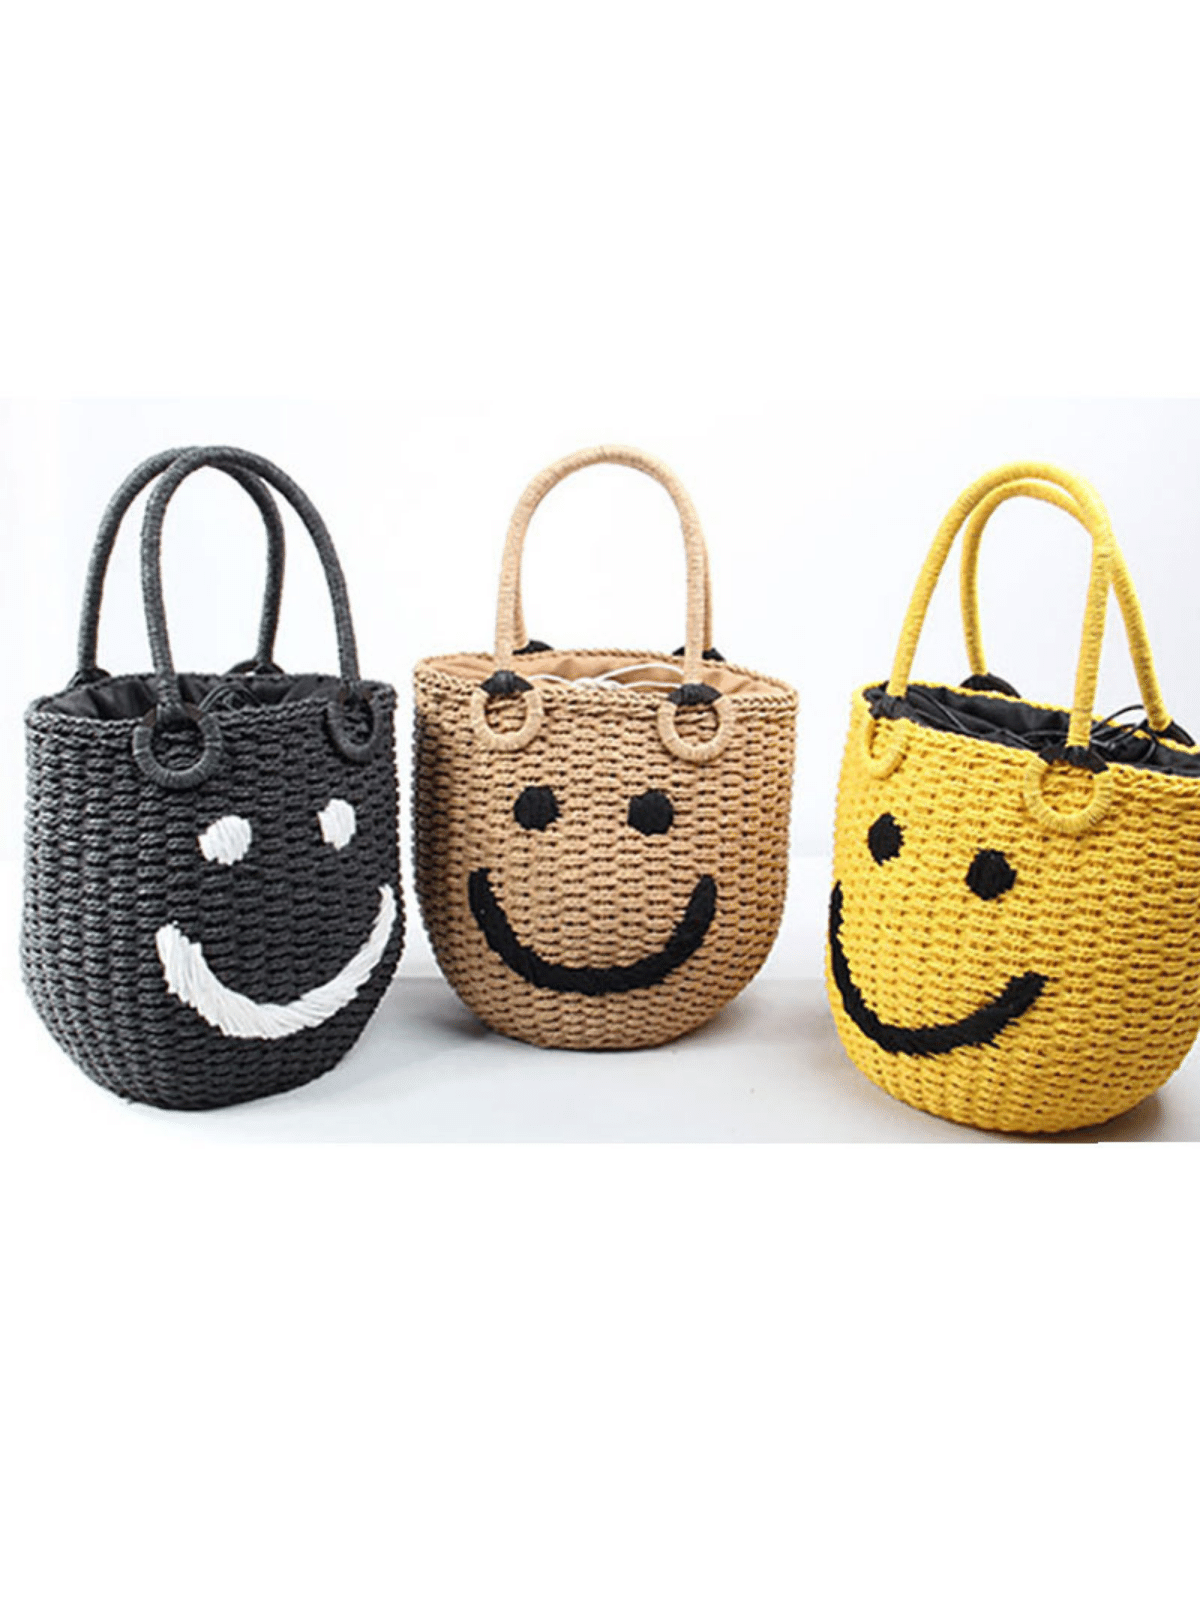 Smiley Face Woven Tote Bag